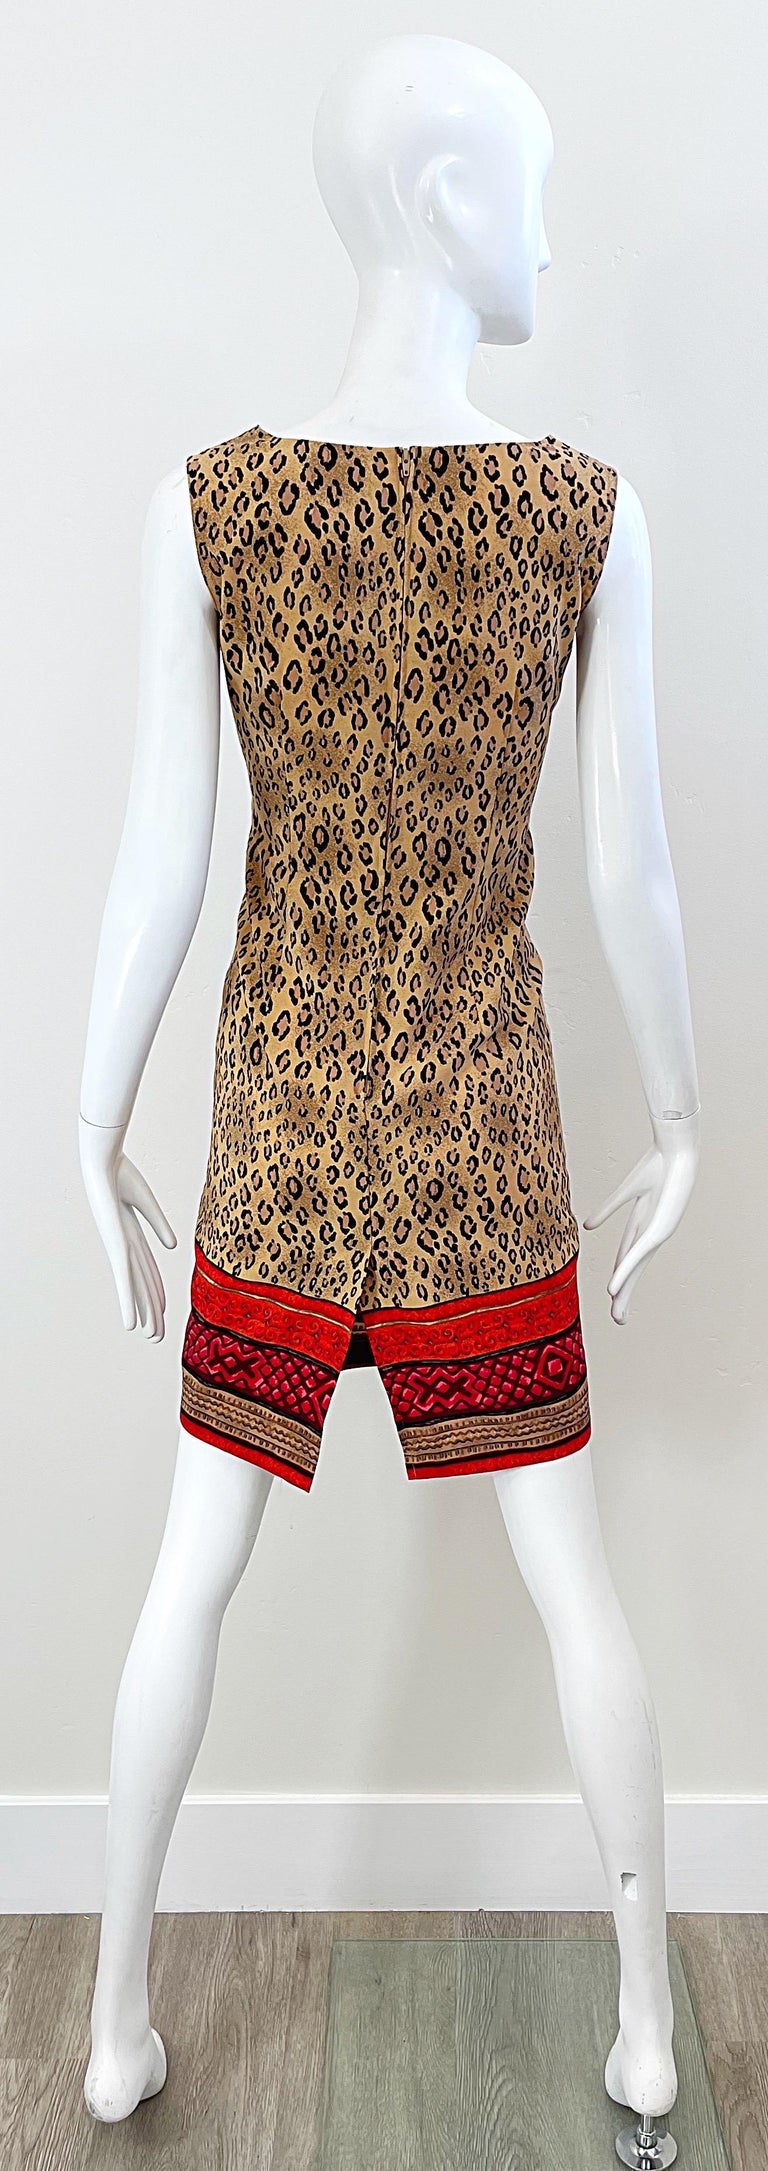 1990s Christian Lacroix Leopard Cheetah Animal Print Size 8 Vintage 90s Dress For Sale 4